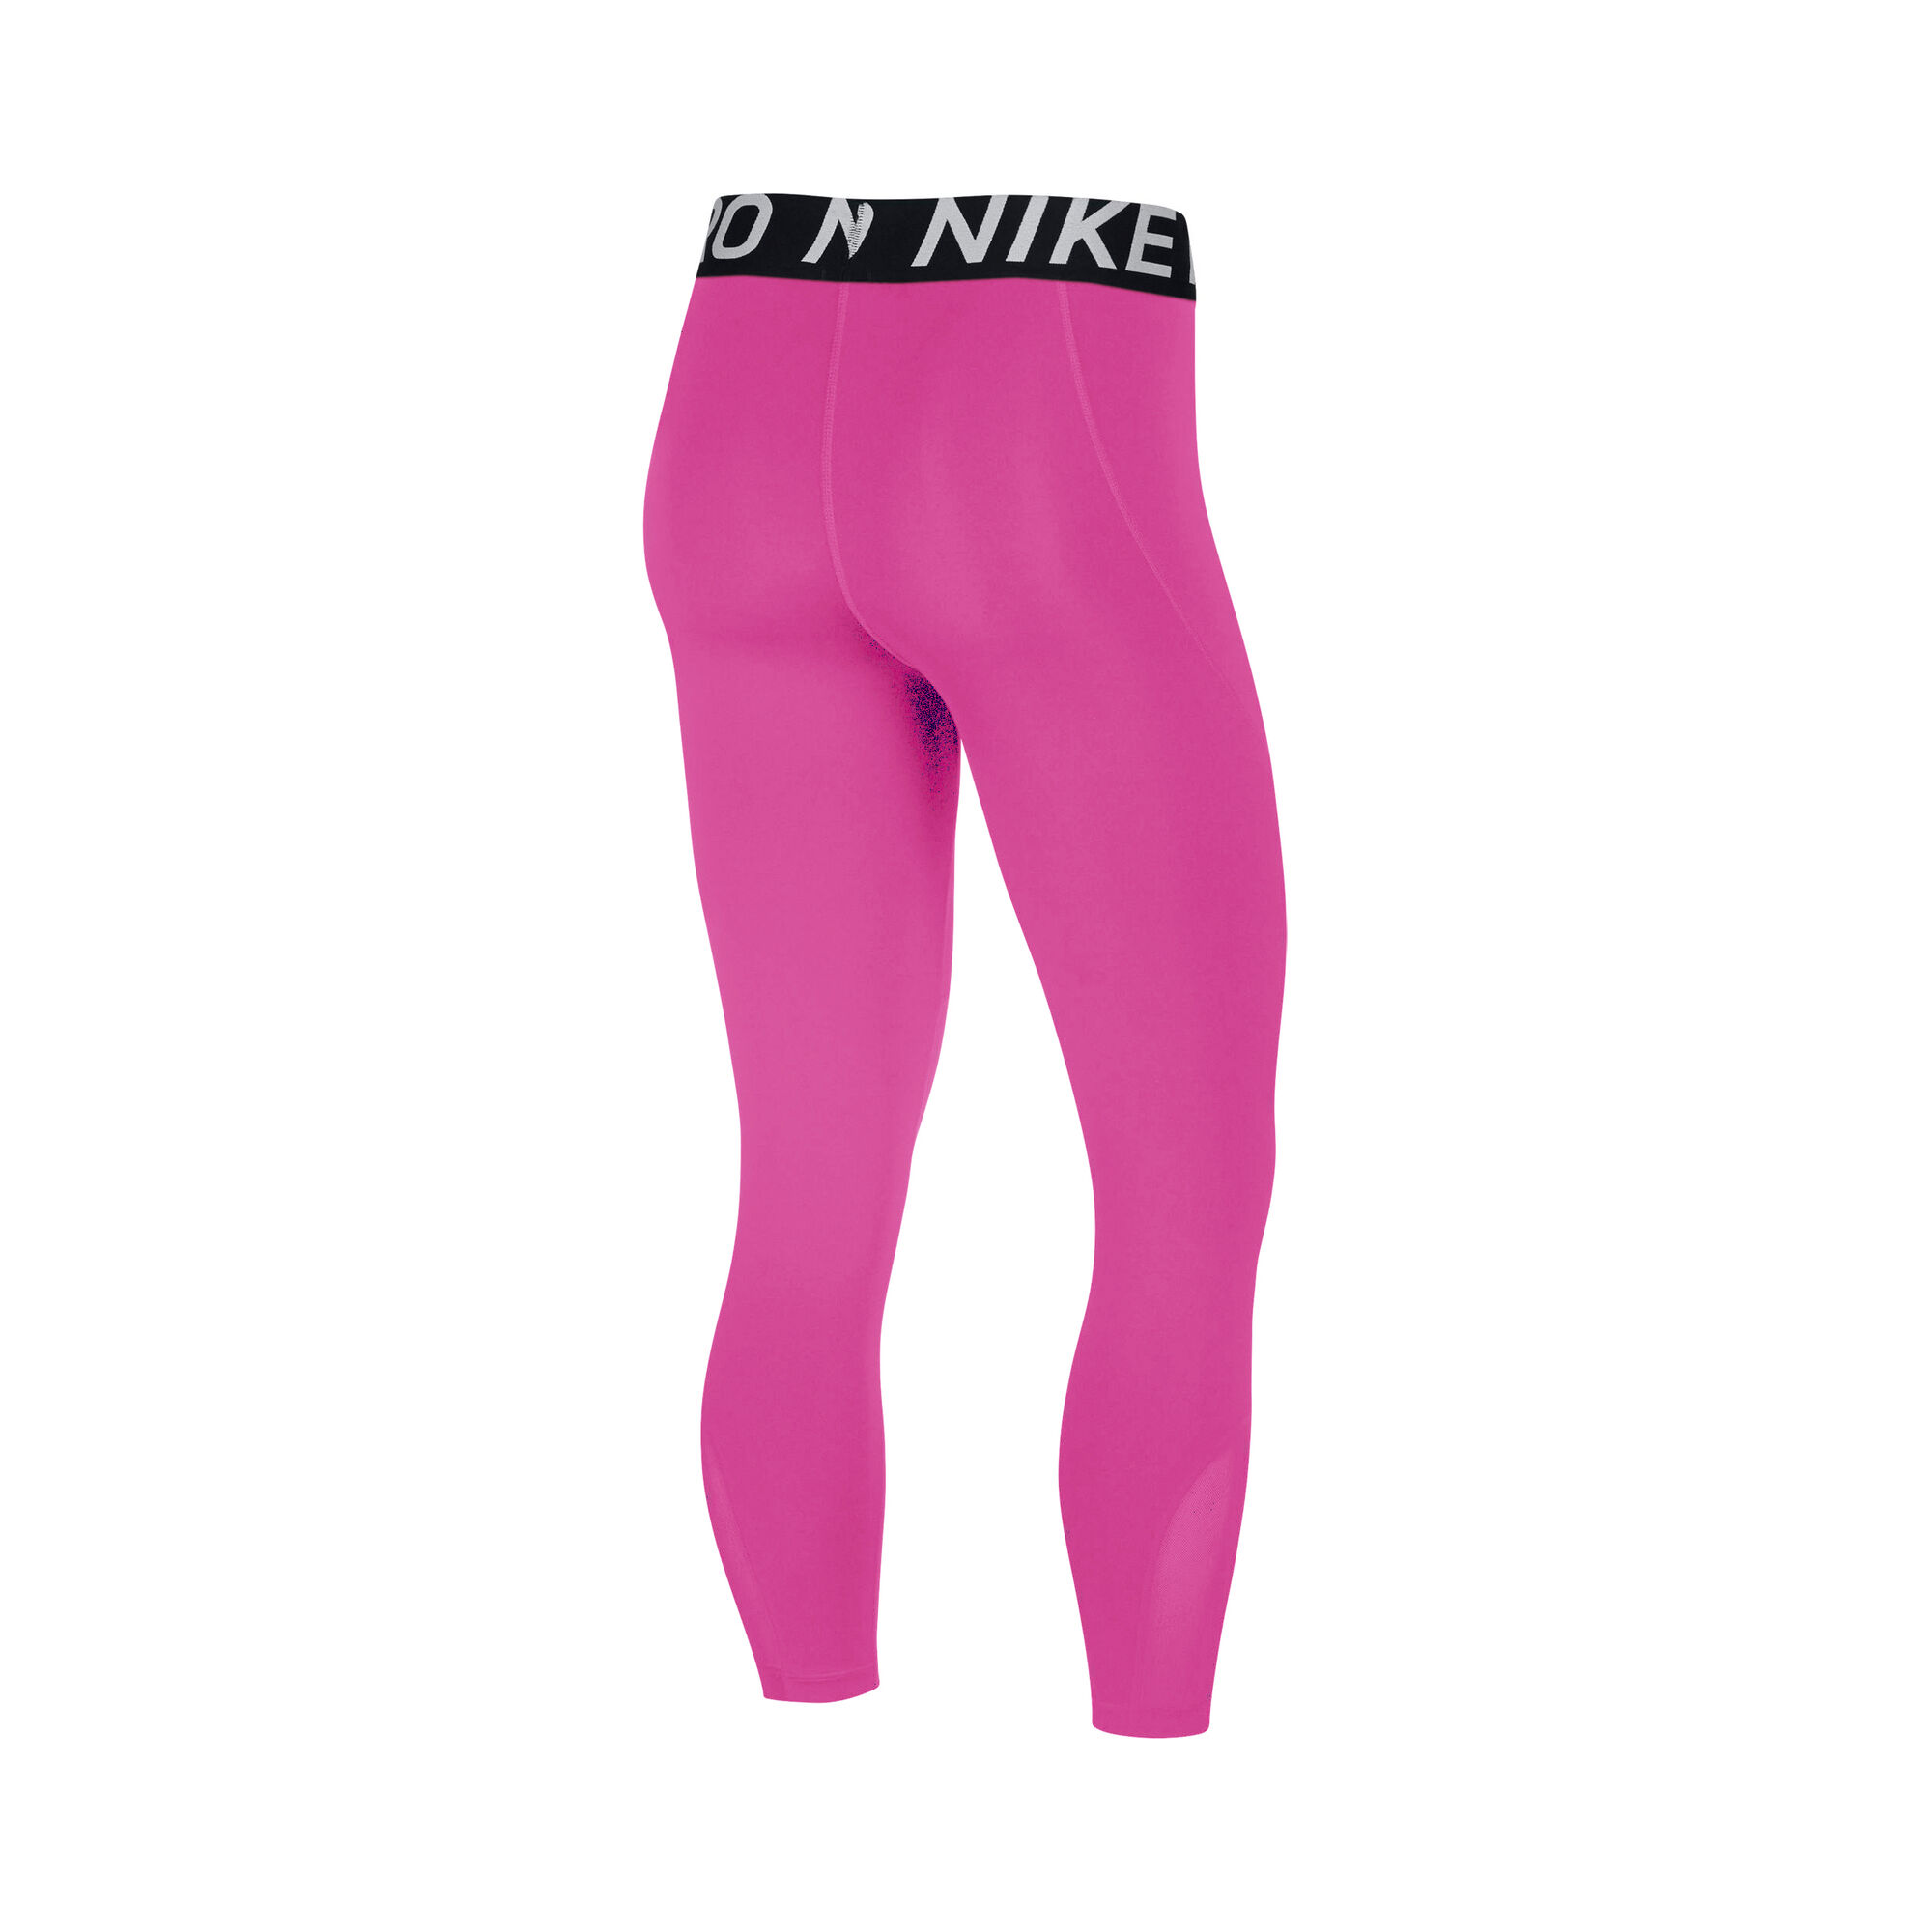 Buy Nike Pro 3/4 Tight Girls Pink, Black online